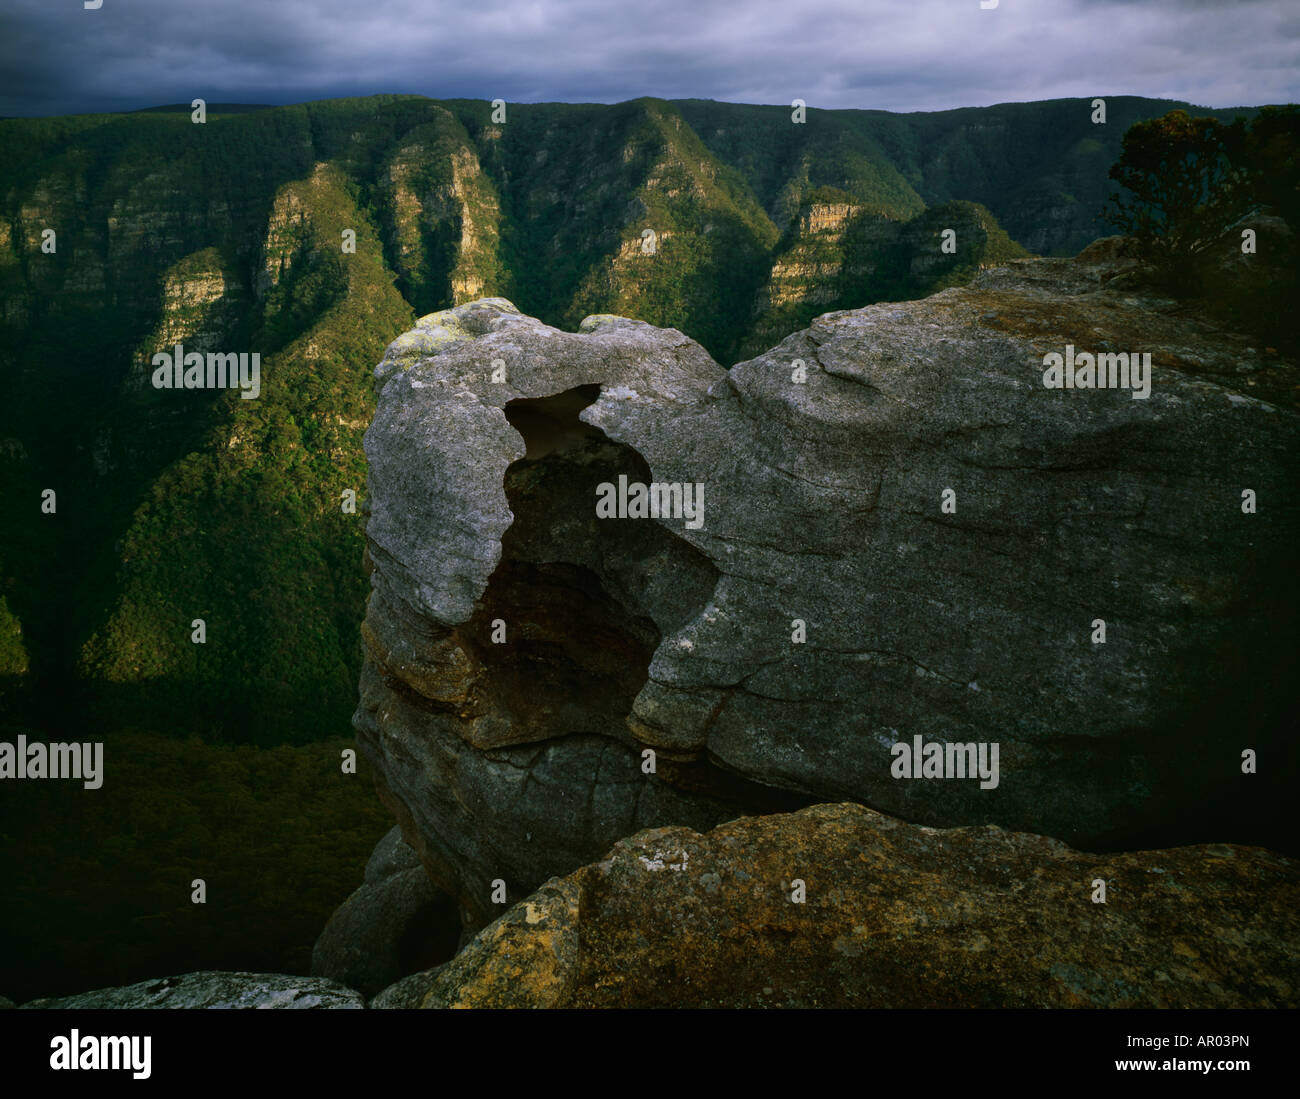 Una vasta area selvaggia entro l'Area Patrimonio Mondiale delle Blue Mountains ad ovest di Sydney. Kanangra Boyd National Park, NSW, Australia Foto Stock